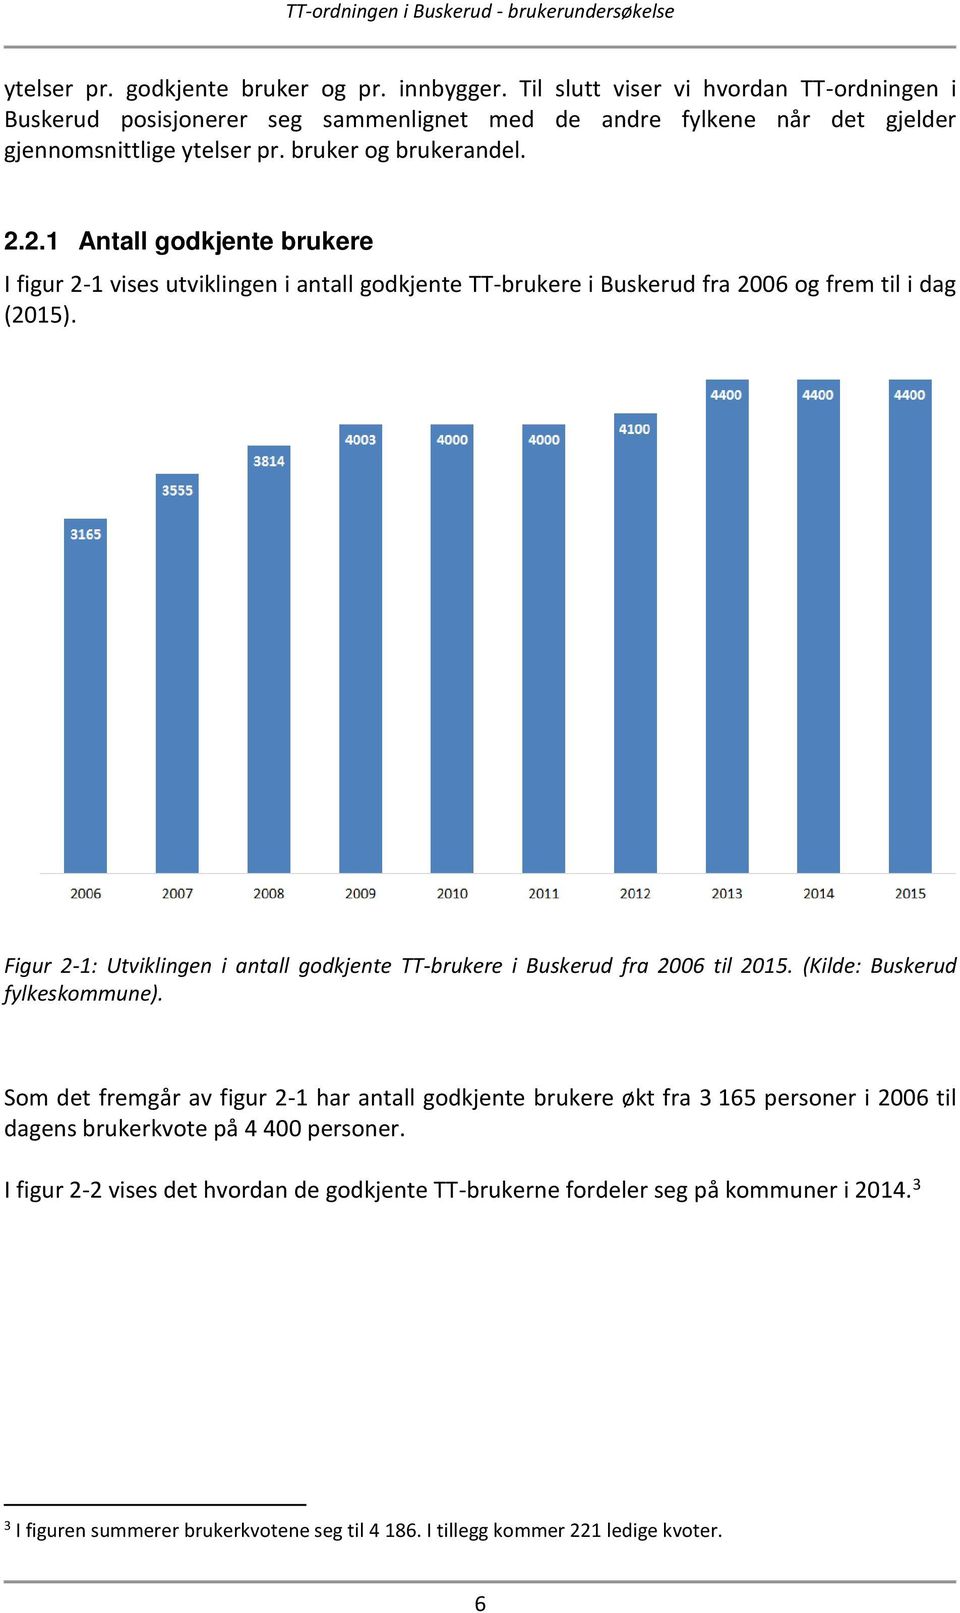 Figur 2-1: Utviklingen i antall godkjente TT-brukere i Buskerud fra 2006 til 2015. (Kilde: Buskerud fylkeskommune).